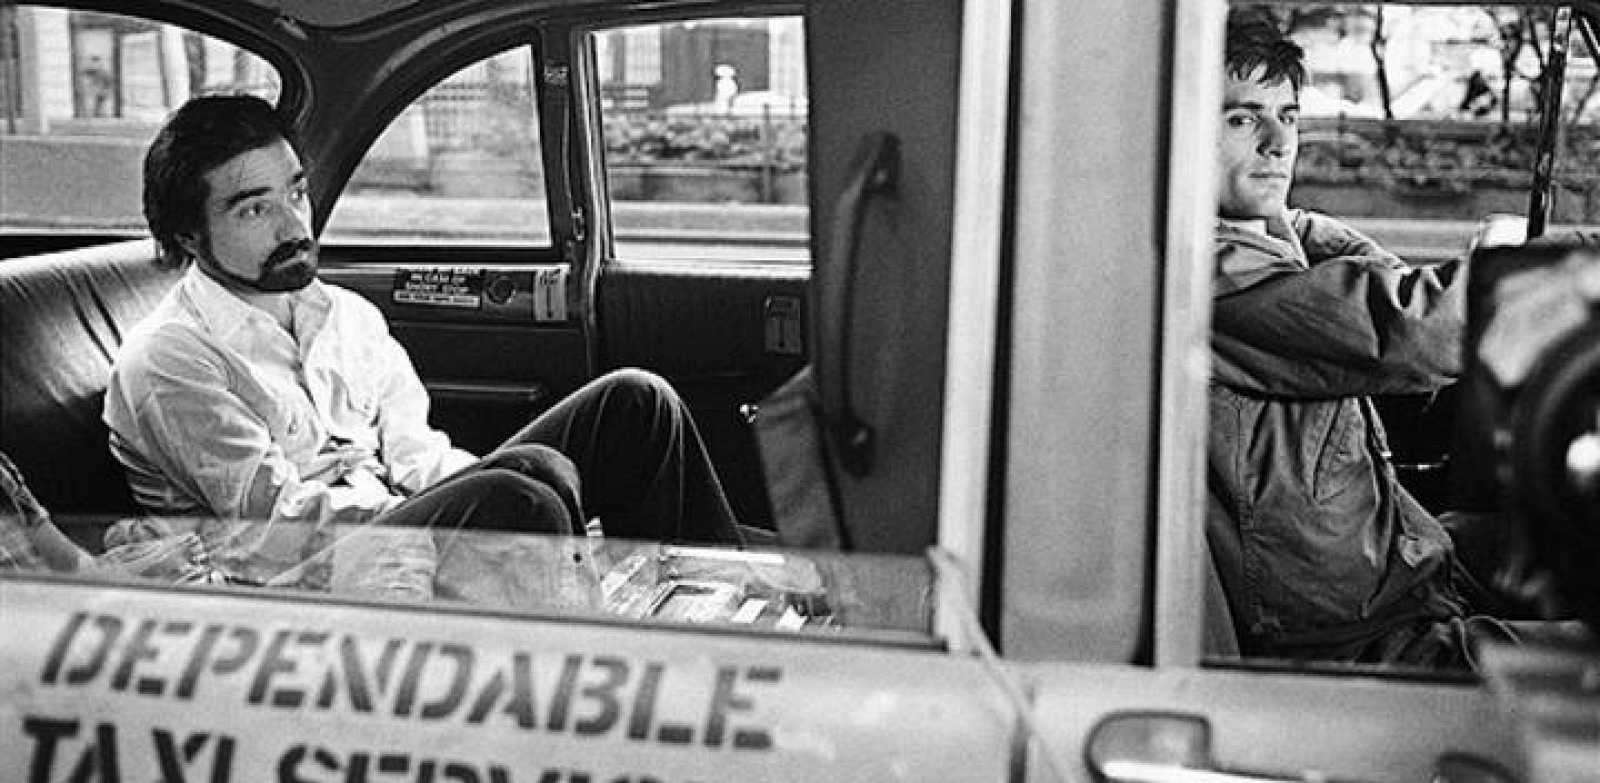 Fotograma de "Taxi driver", de Martin Scorsese